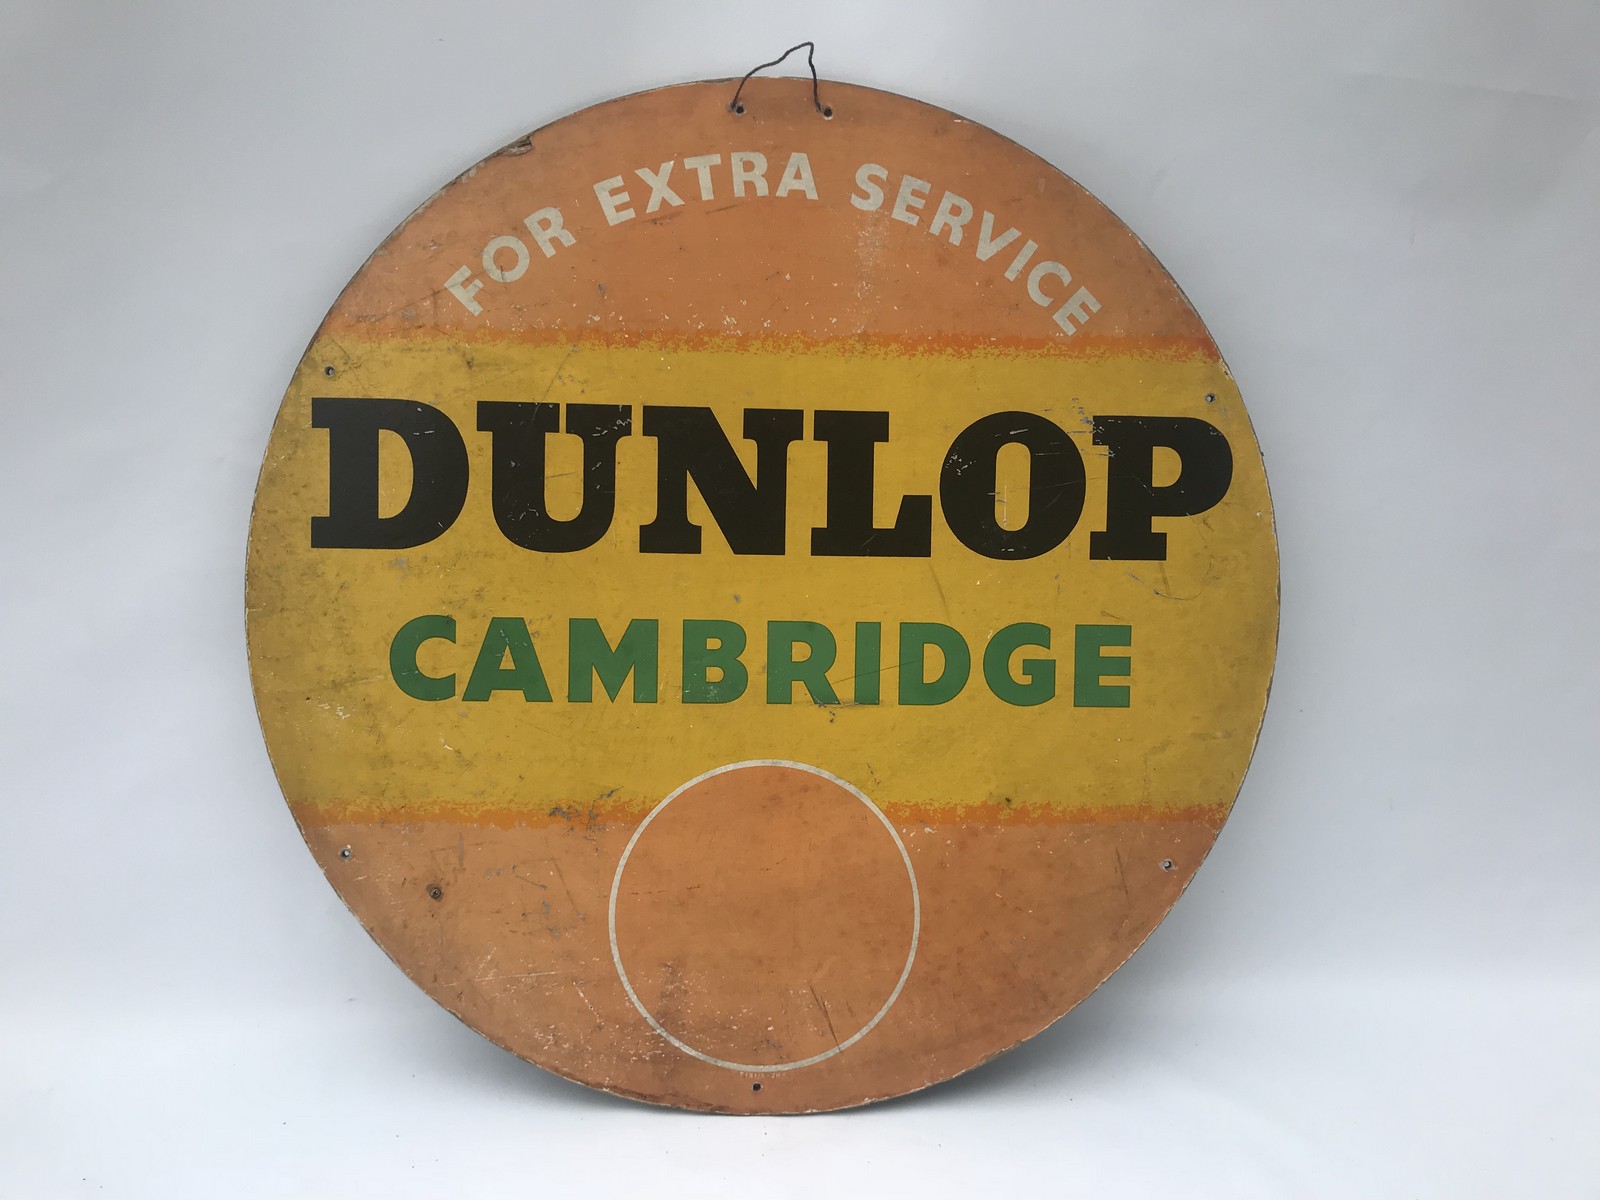 A Dunlop Cambridge tyre insert showcard, 3 3/4" diameter.